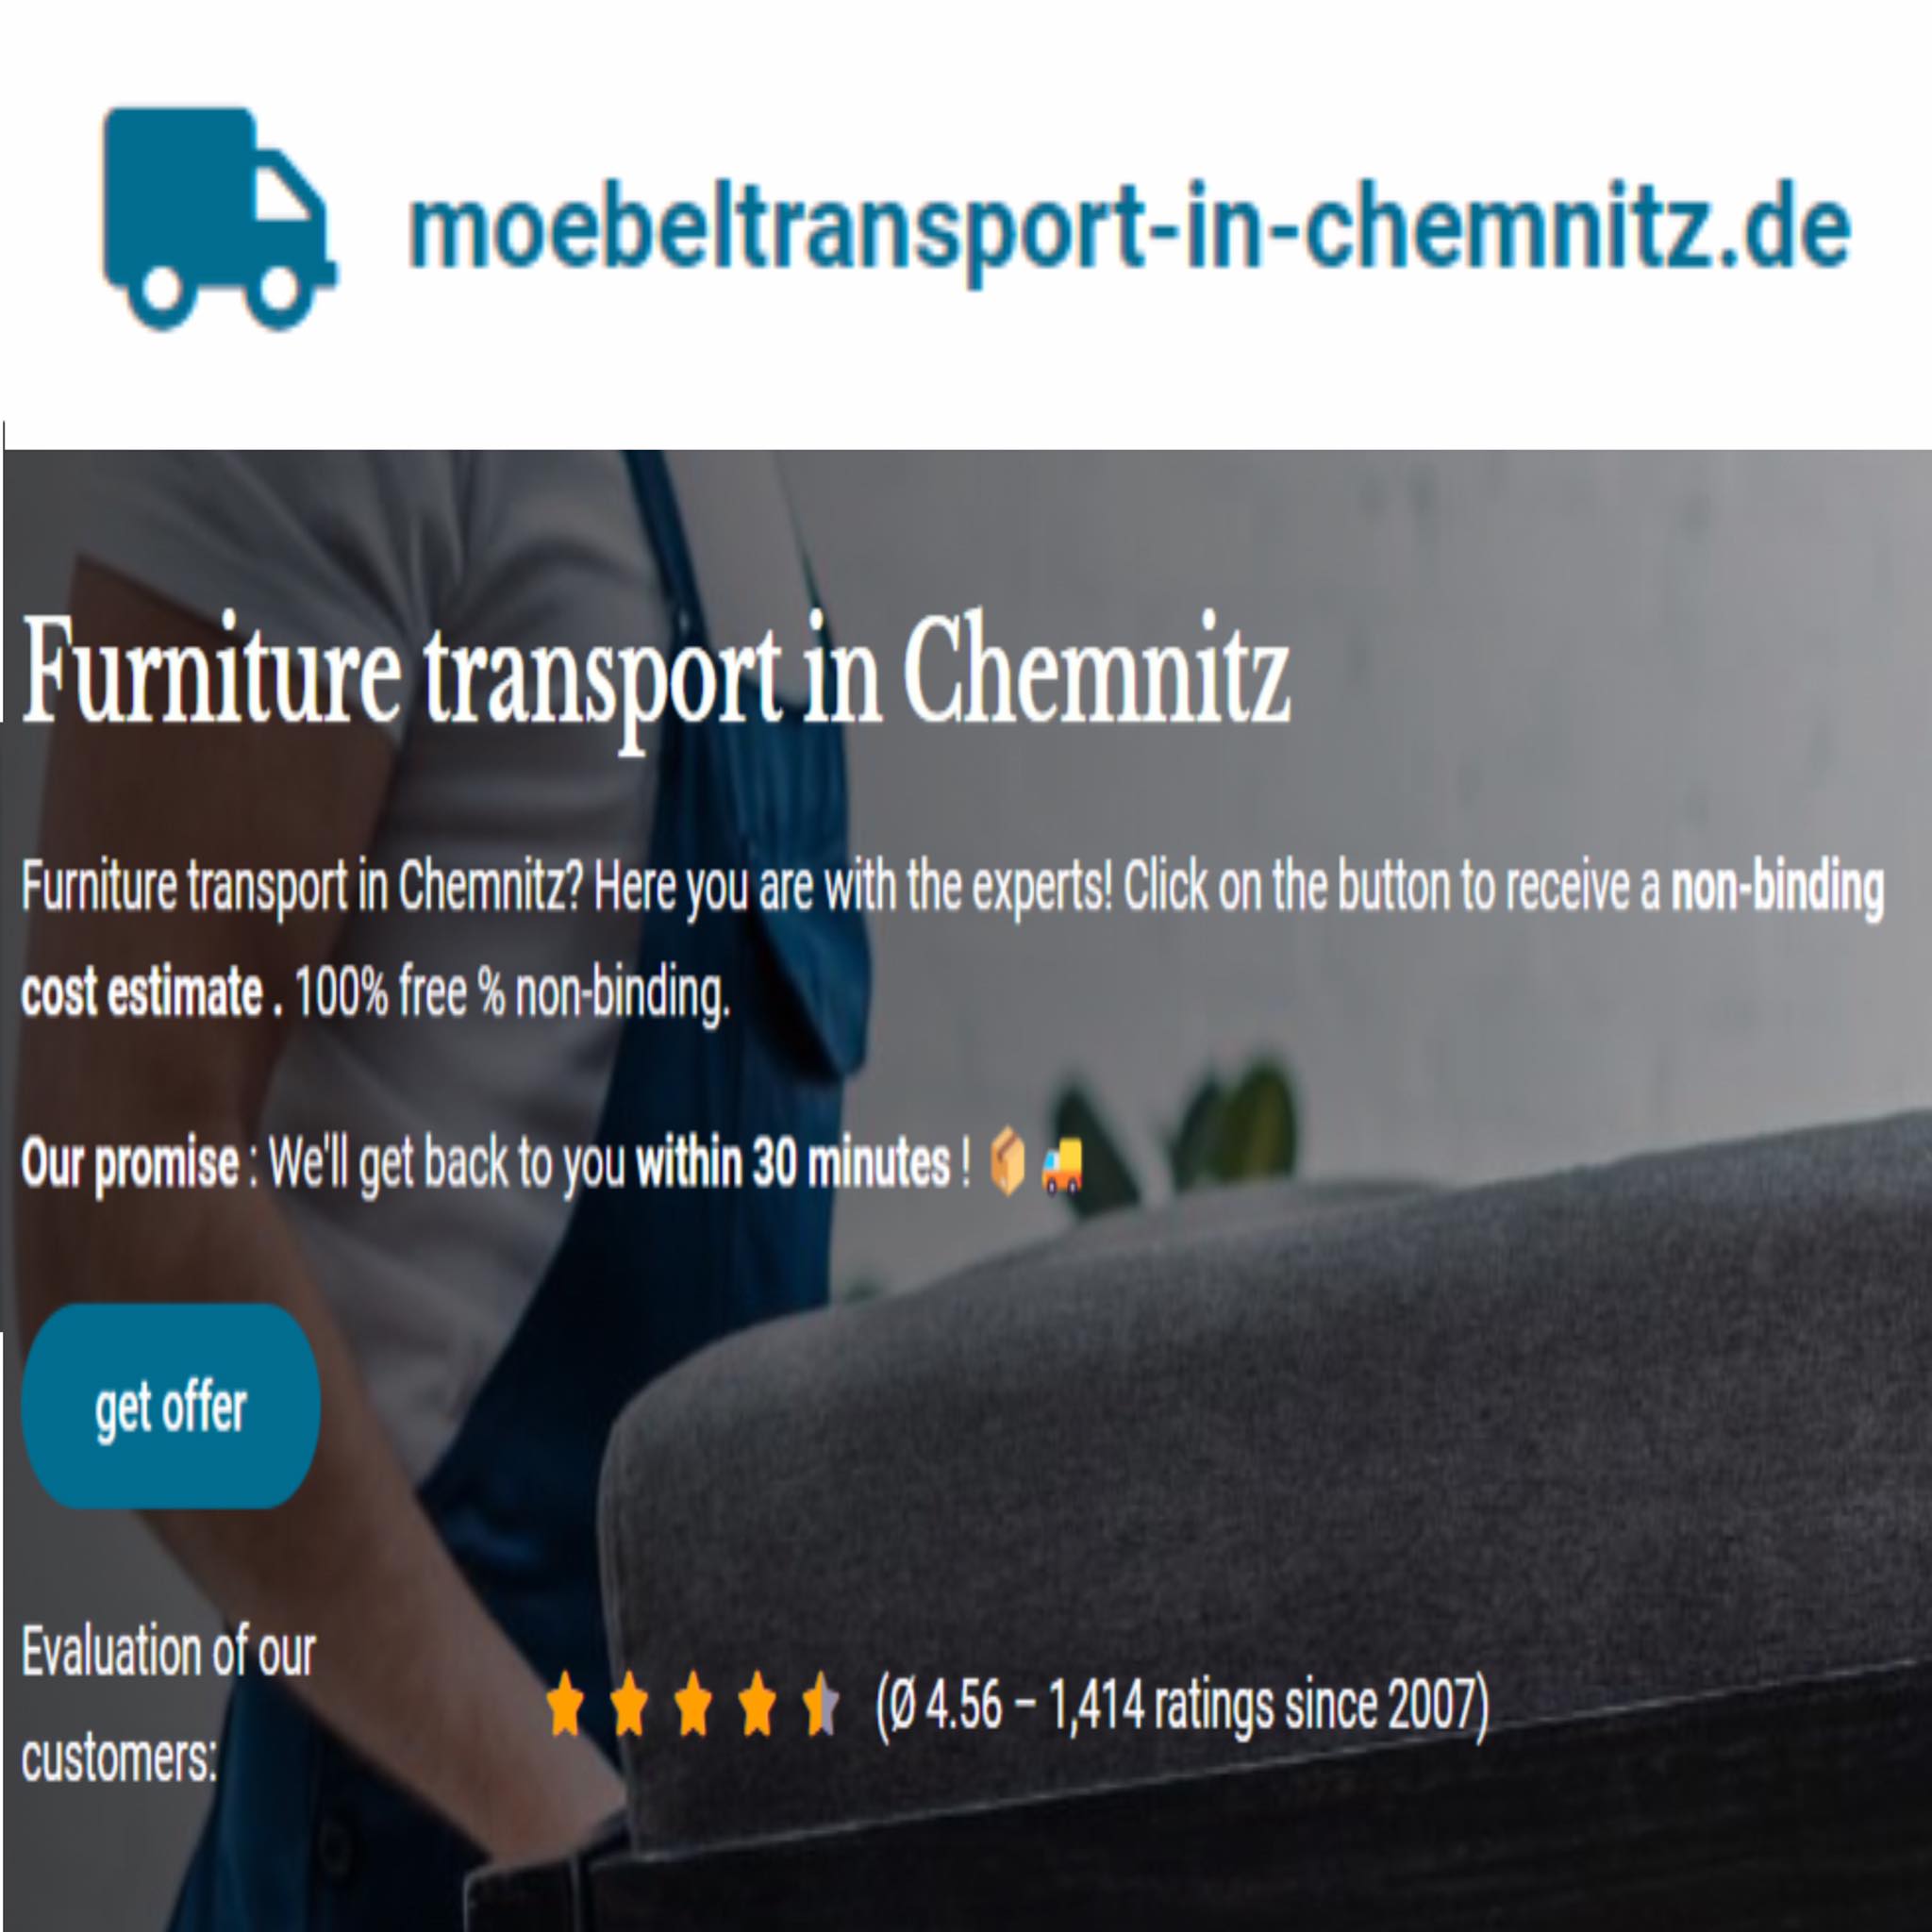 moebeltransport-in-chemnitz.de in Chemnitz